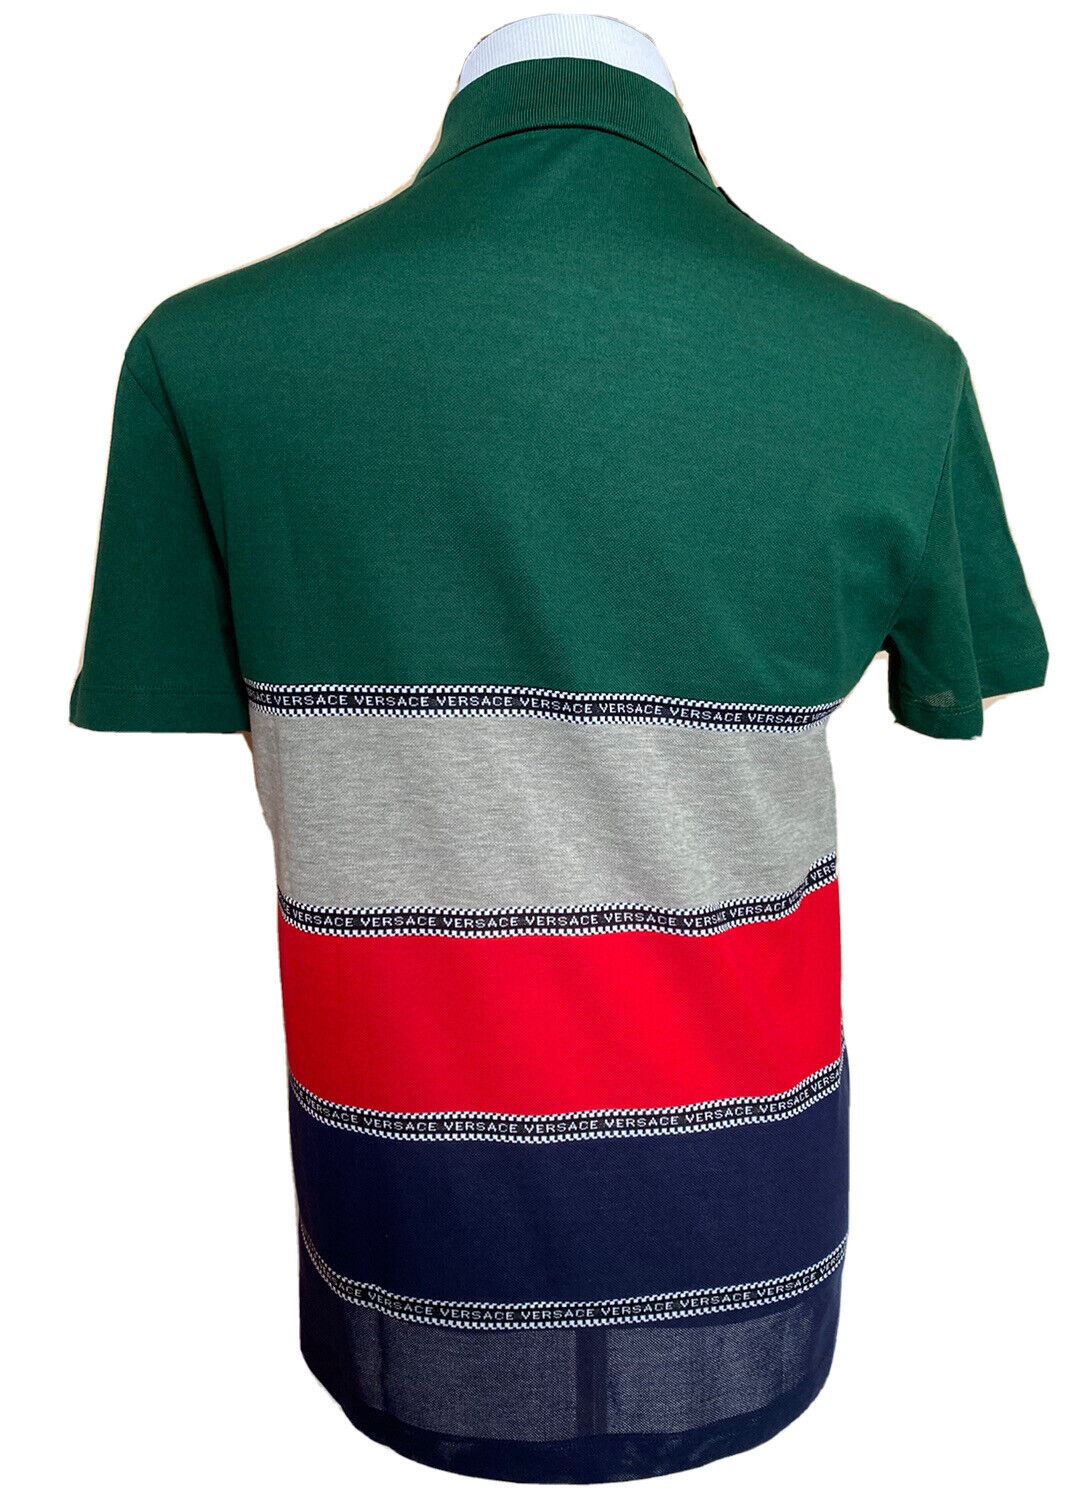 NWT $650 Versace Хлопковая рубашка-поло в синюю полоску 2XL A84992 Италия